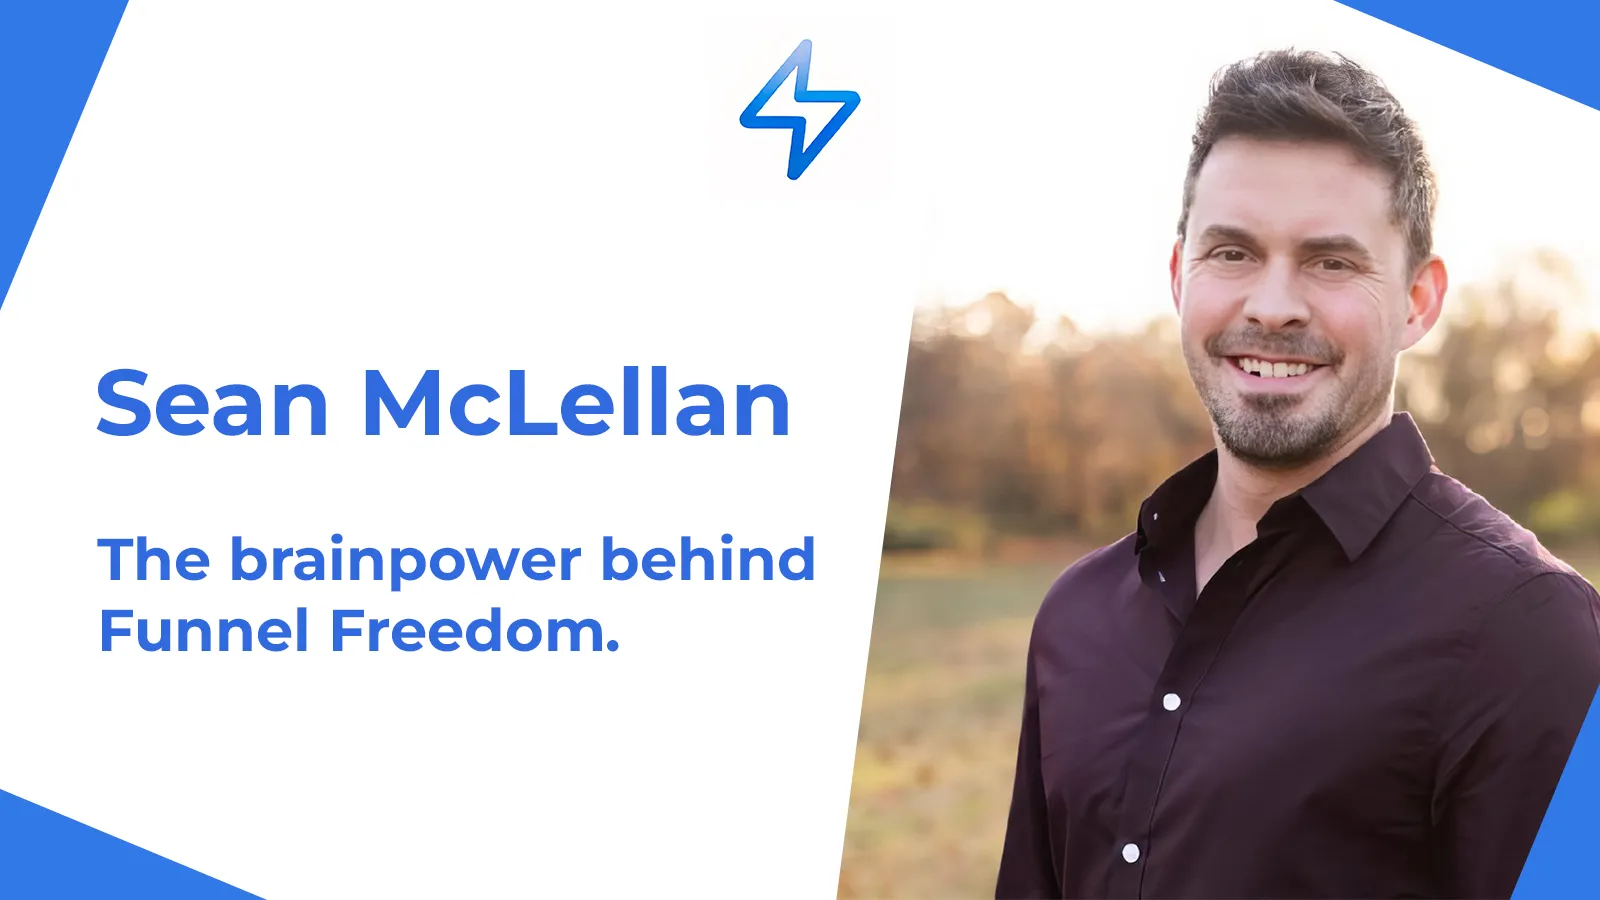 Sean McLellan is the Brainpower Behind Funnel Freedom